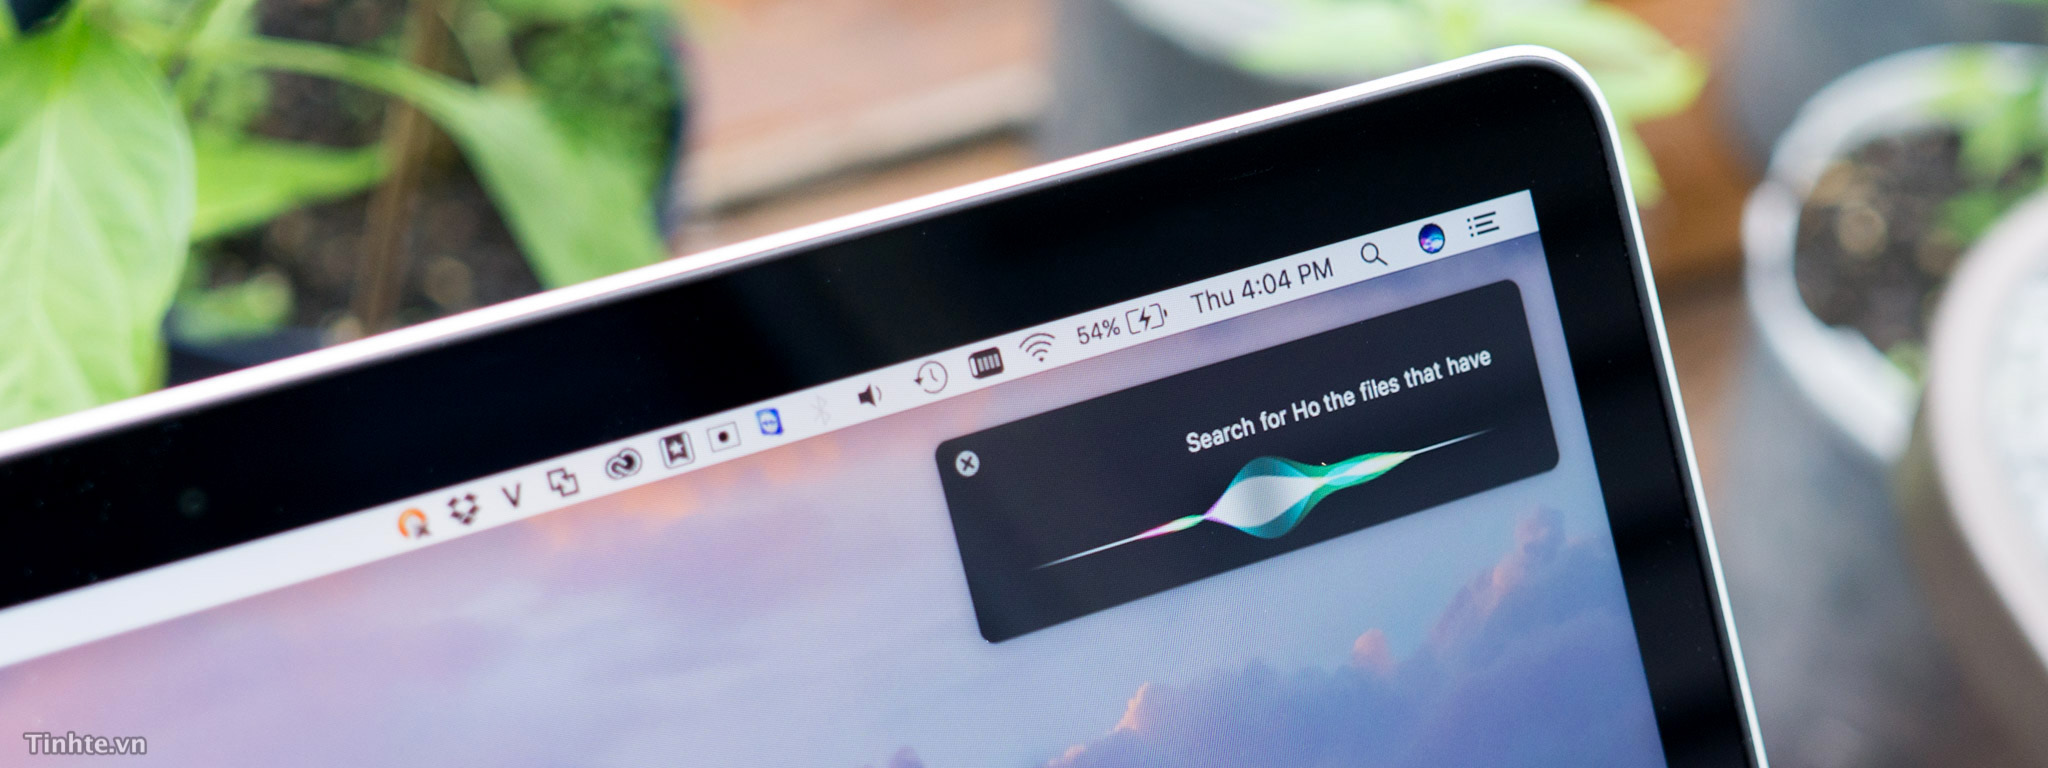 macOS Sierra 10.12 sẽ bắt đầu cho cập nhật vào ngày 20/9